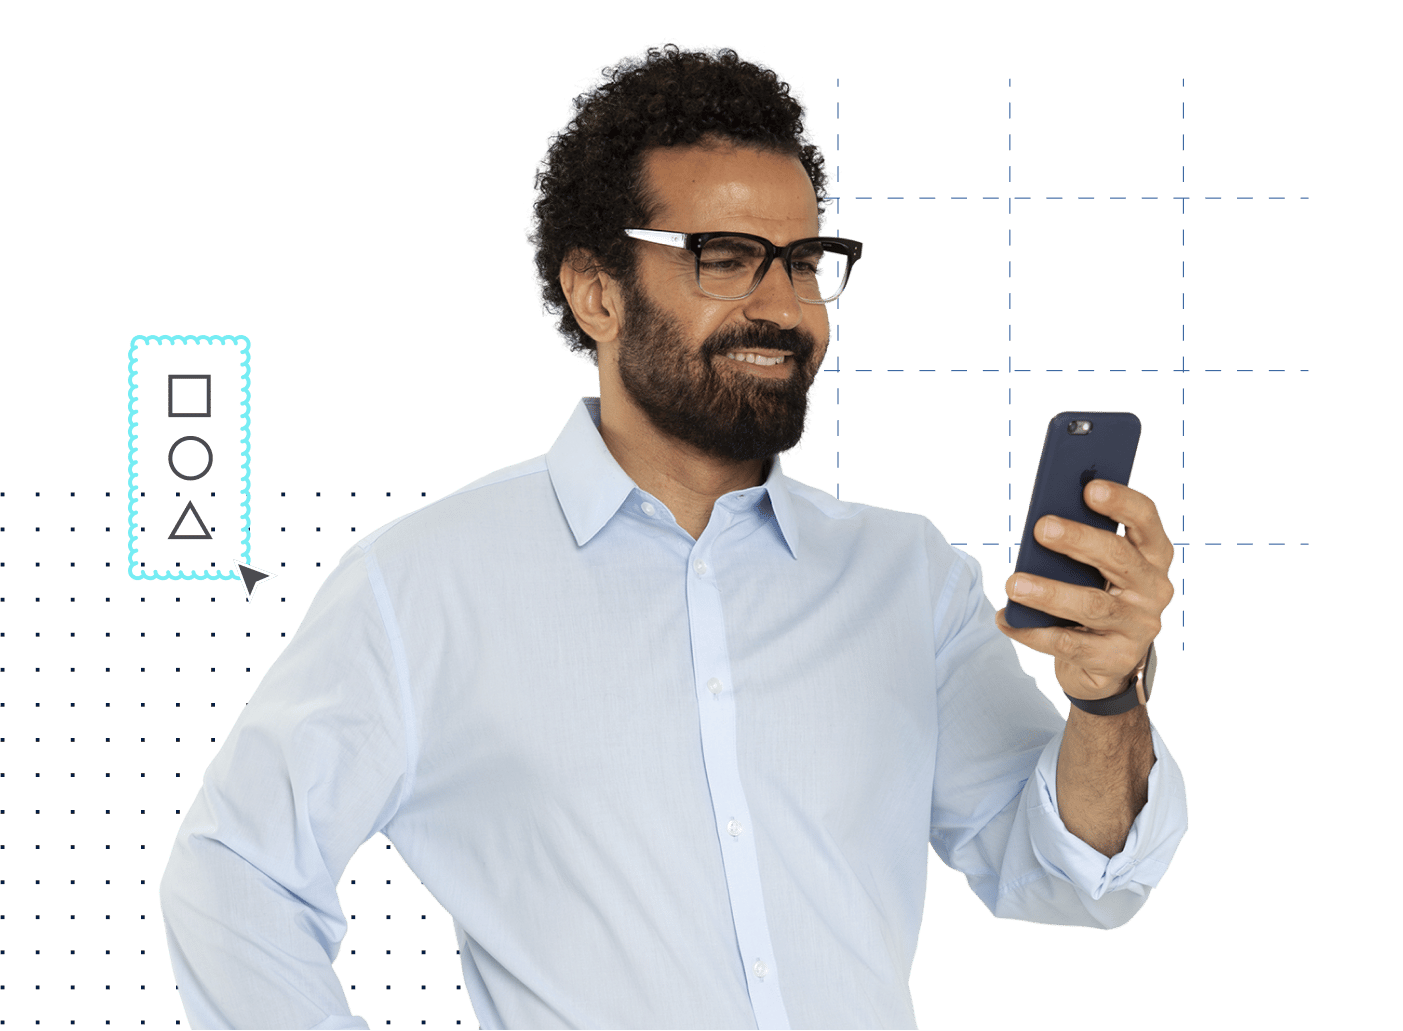 Architekt im Hemd und mit Brille schaut auf mobiles Gerät